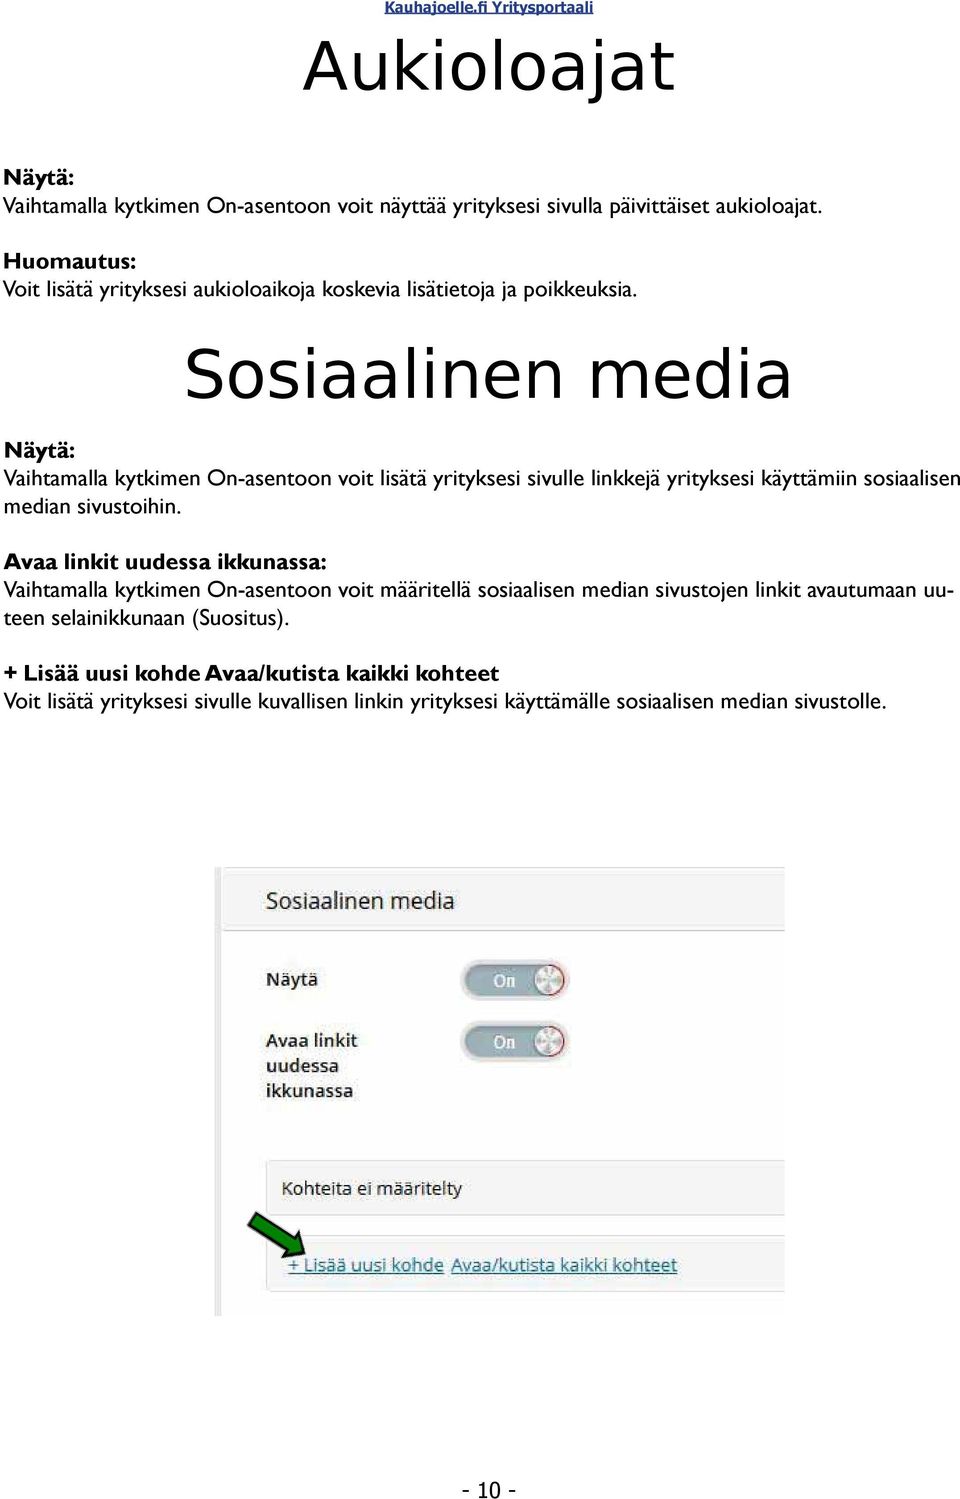 Sosiaalinen media Näytä: Vaihtamalla kytkimen On-asentoon voit lisätä yrityksesi sivulle linkkejä yrityksesi käyttämiin sosiaalisen median sivustoihin.